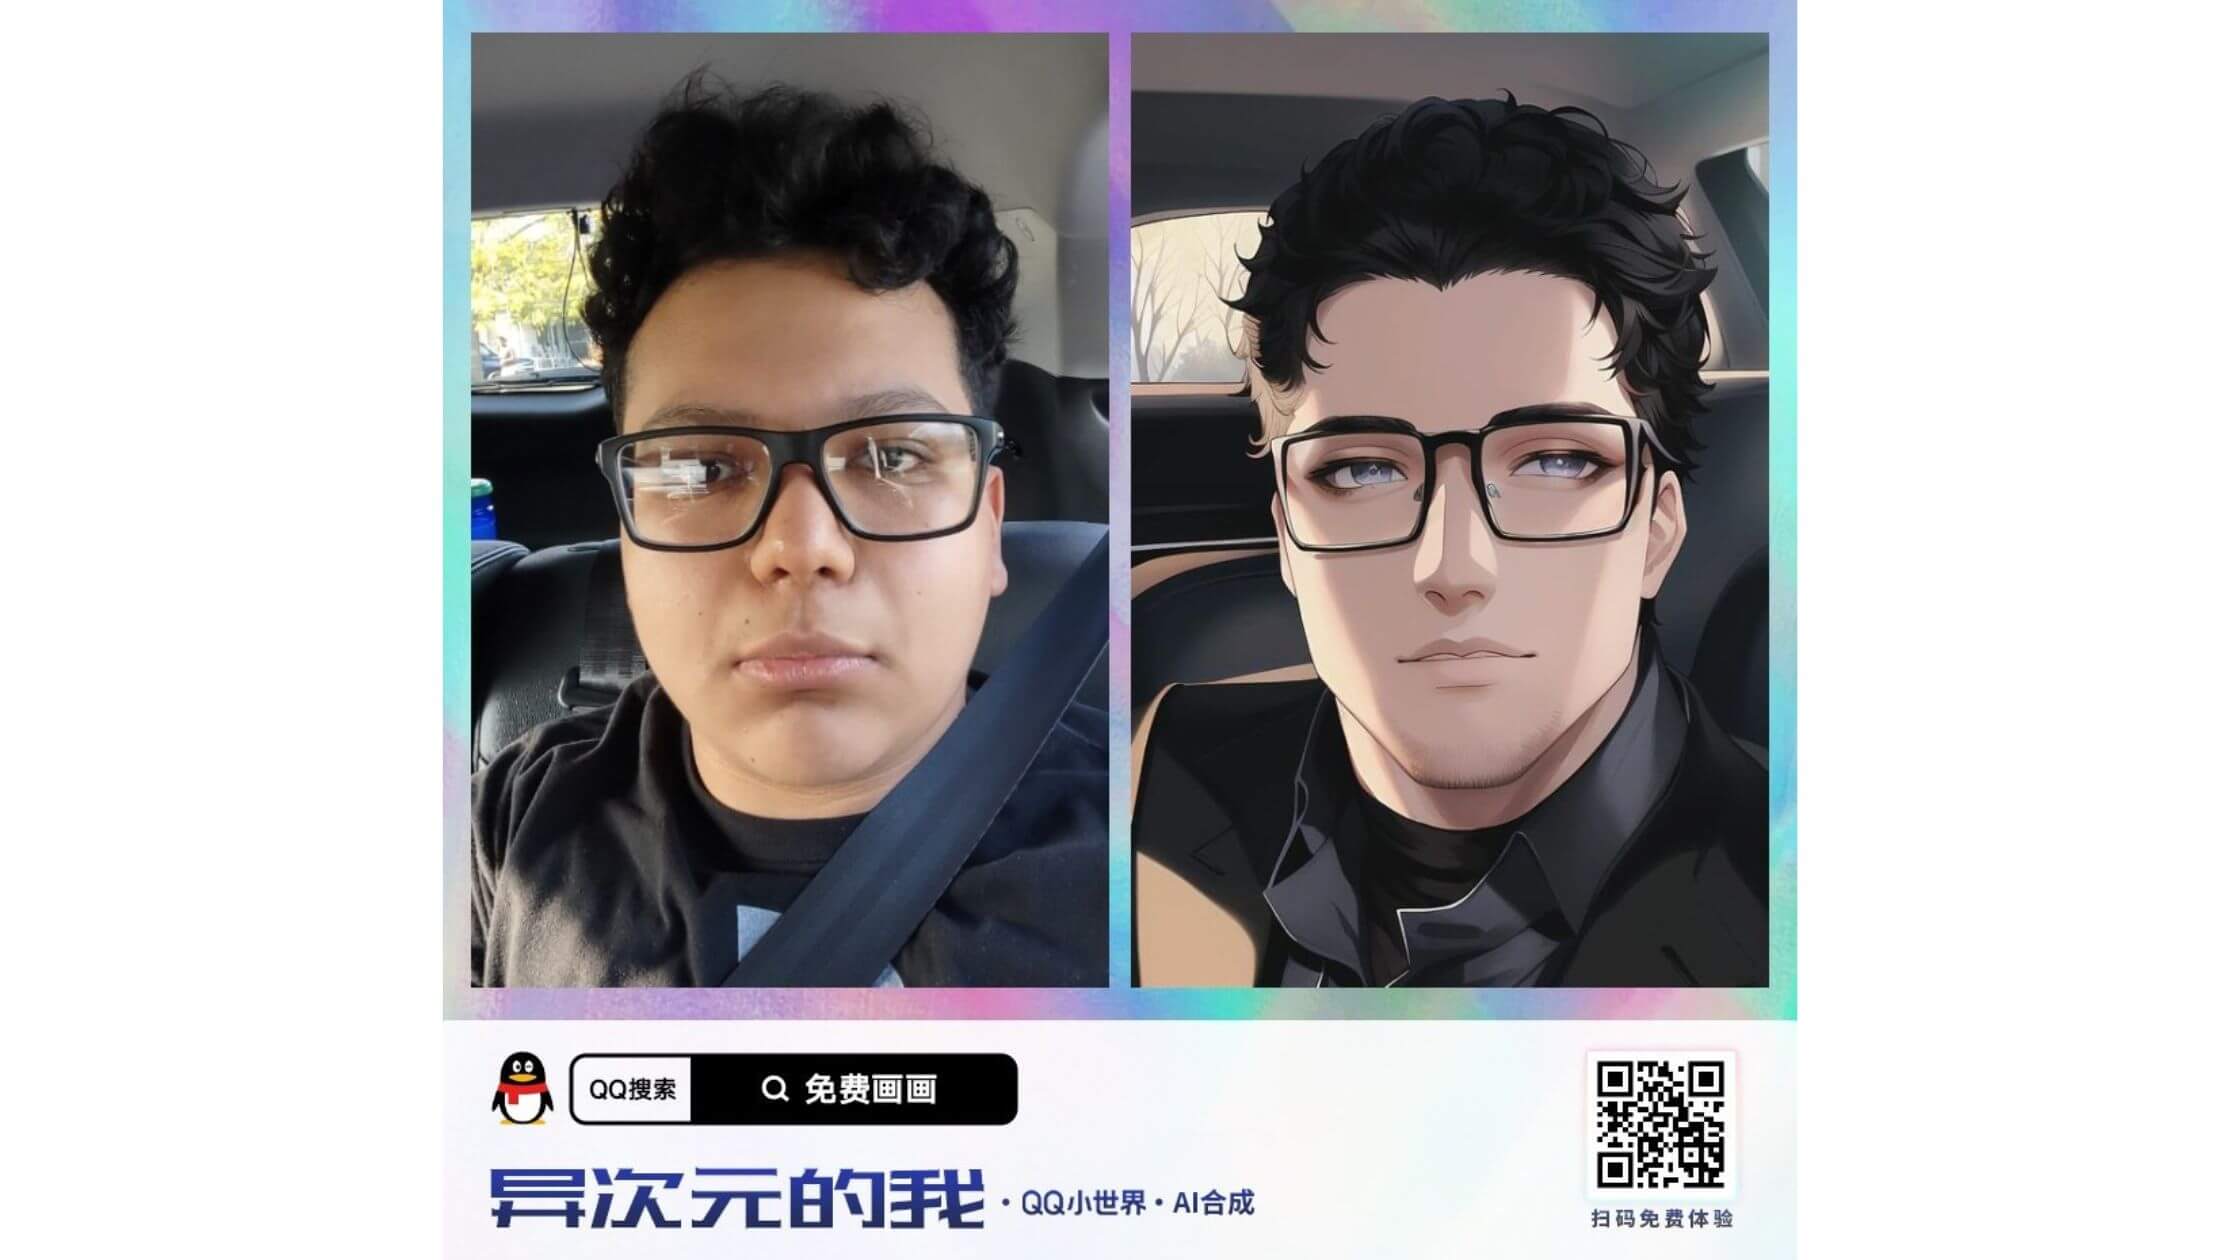 Una web china que convierte los selfies en personajes de anime se ha hecho viral